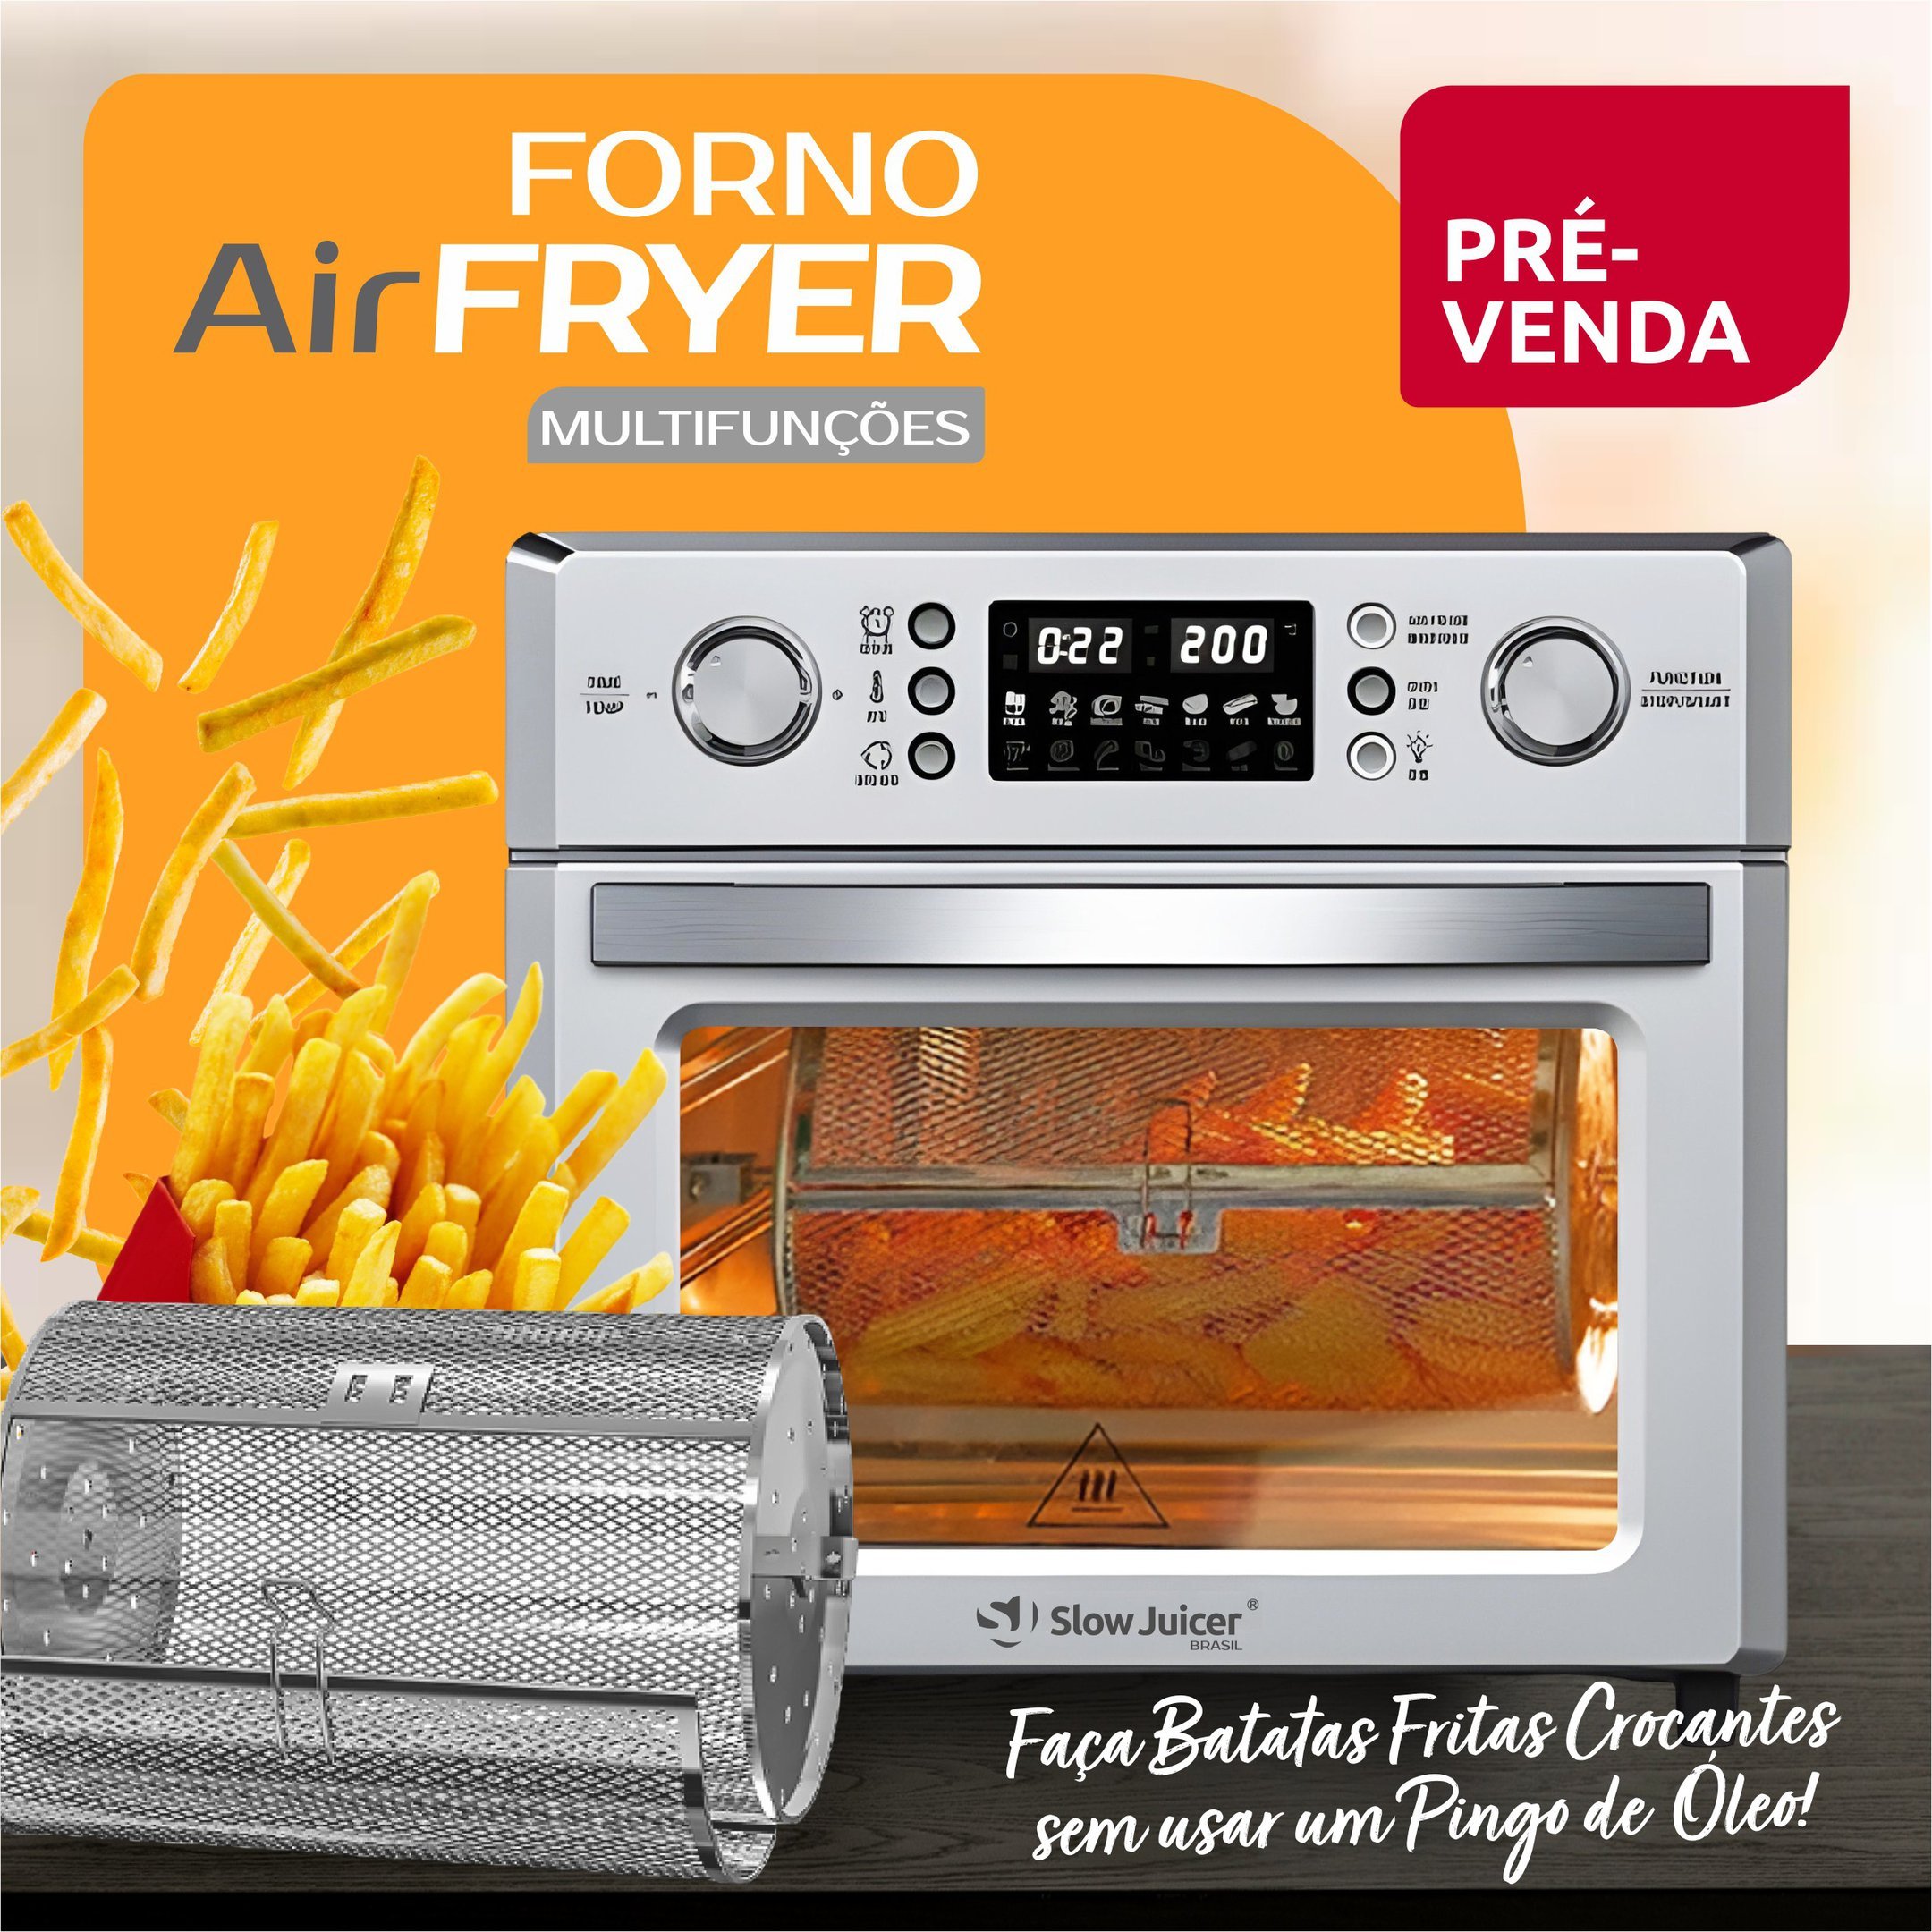 Forno Air Fryer c/ Espeto para Churrasco - 110v - 6